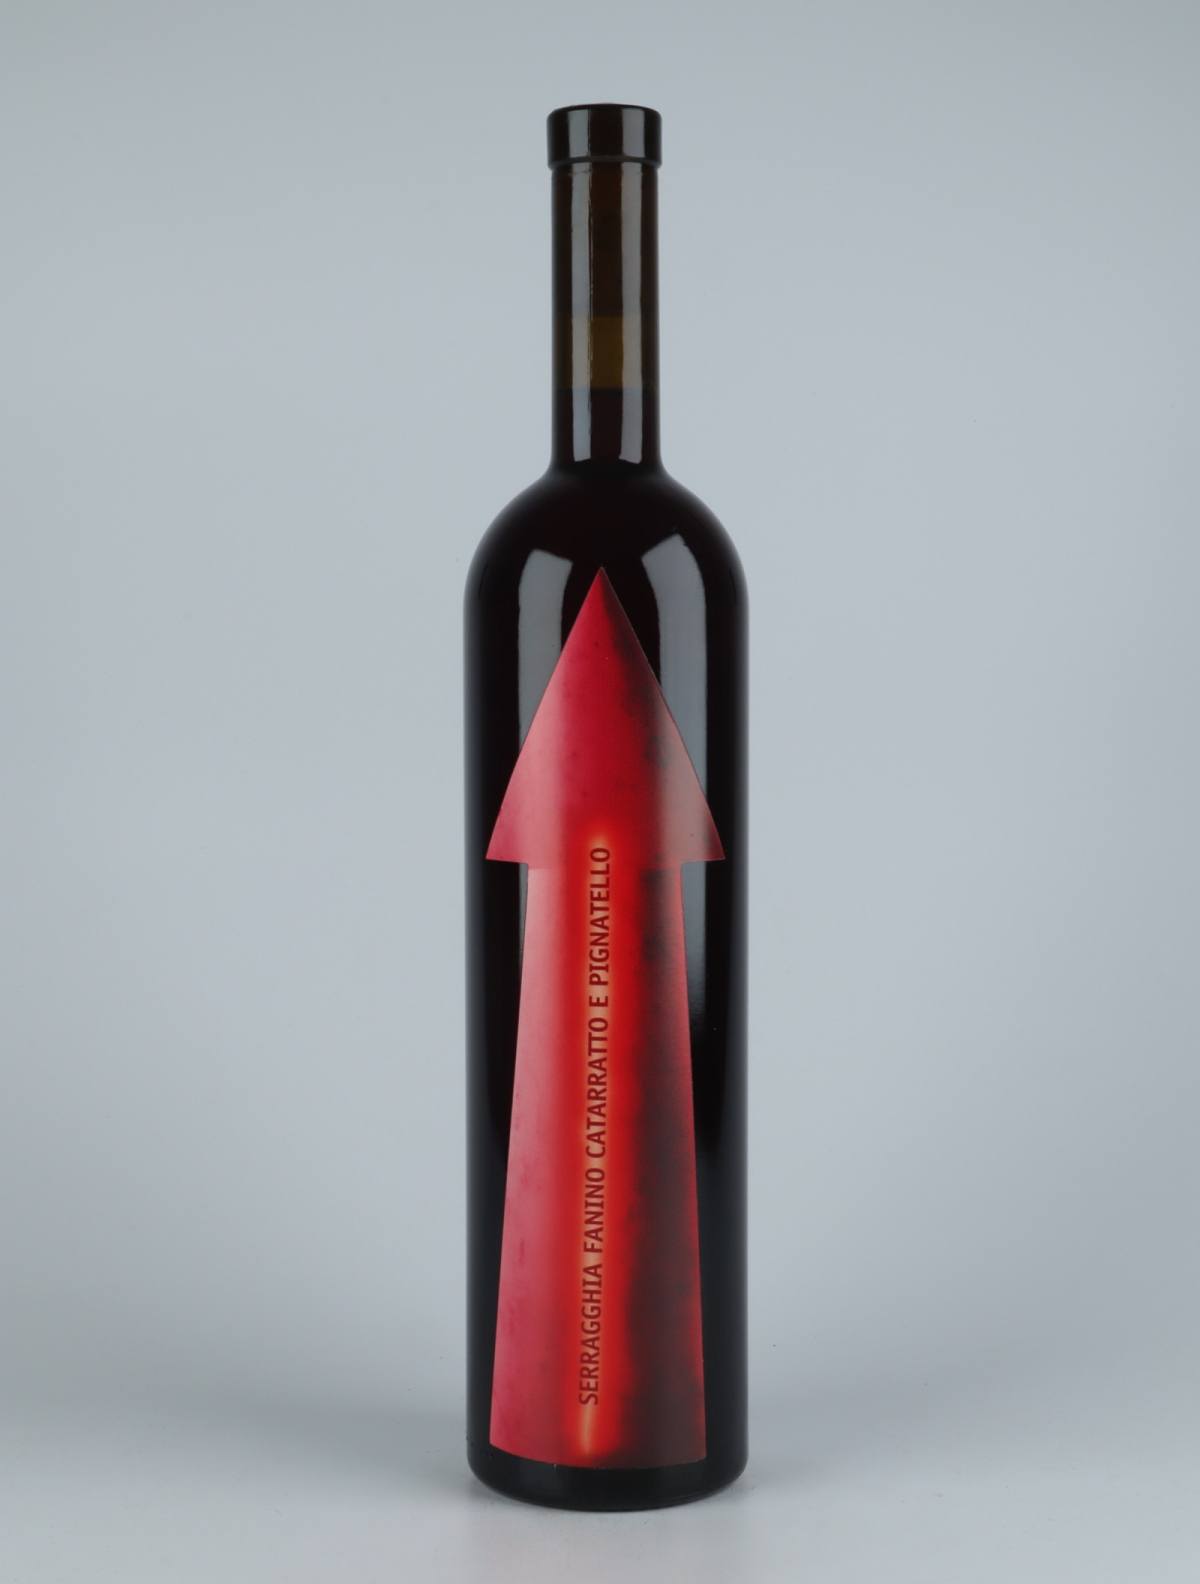 A bottle 2020 Serragghia Fanino Red wine from Gabrio Bini, Sicily in Italy